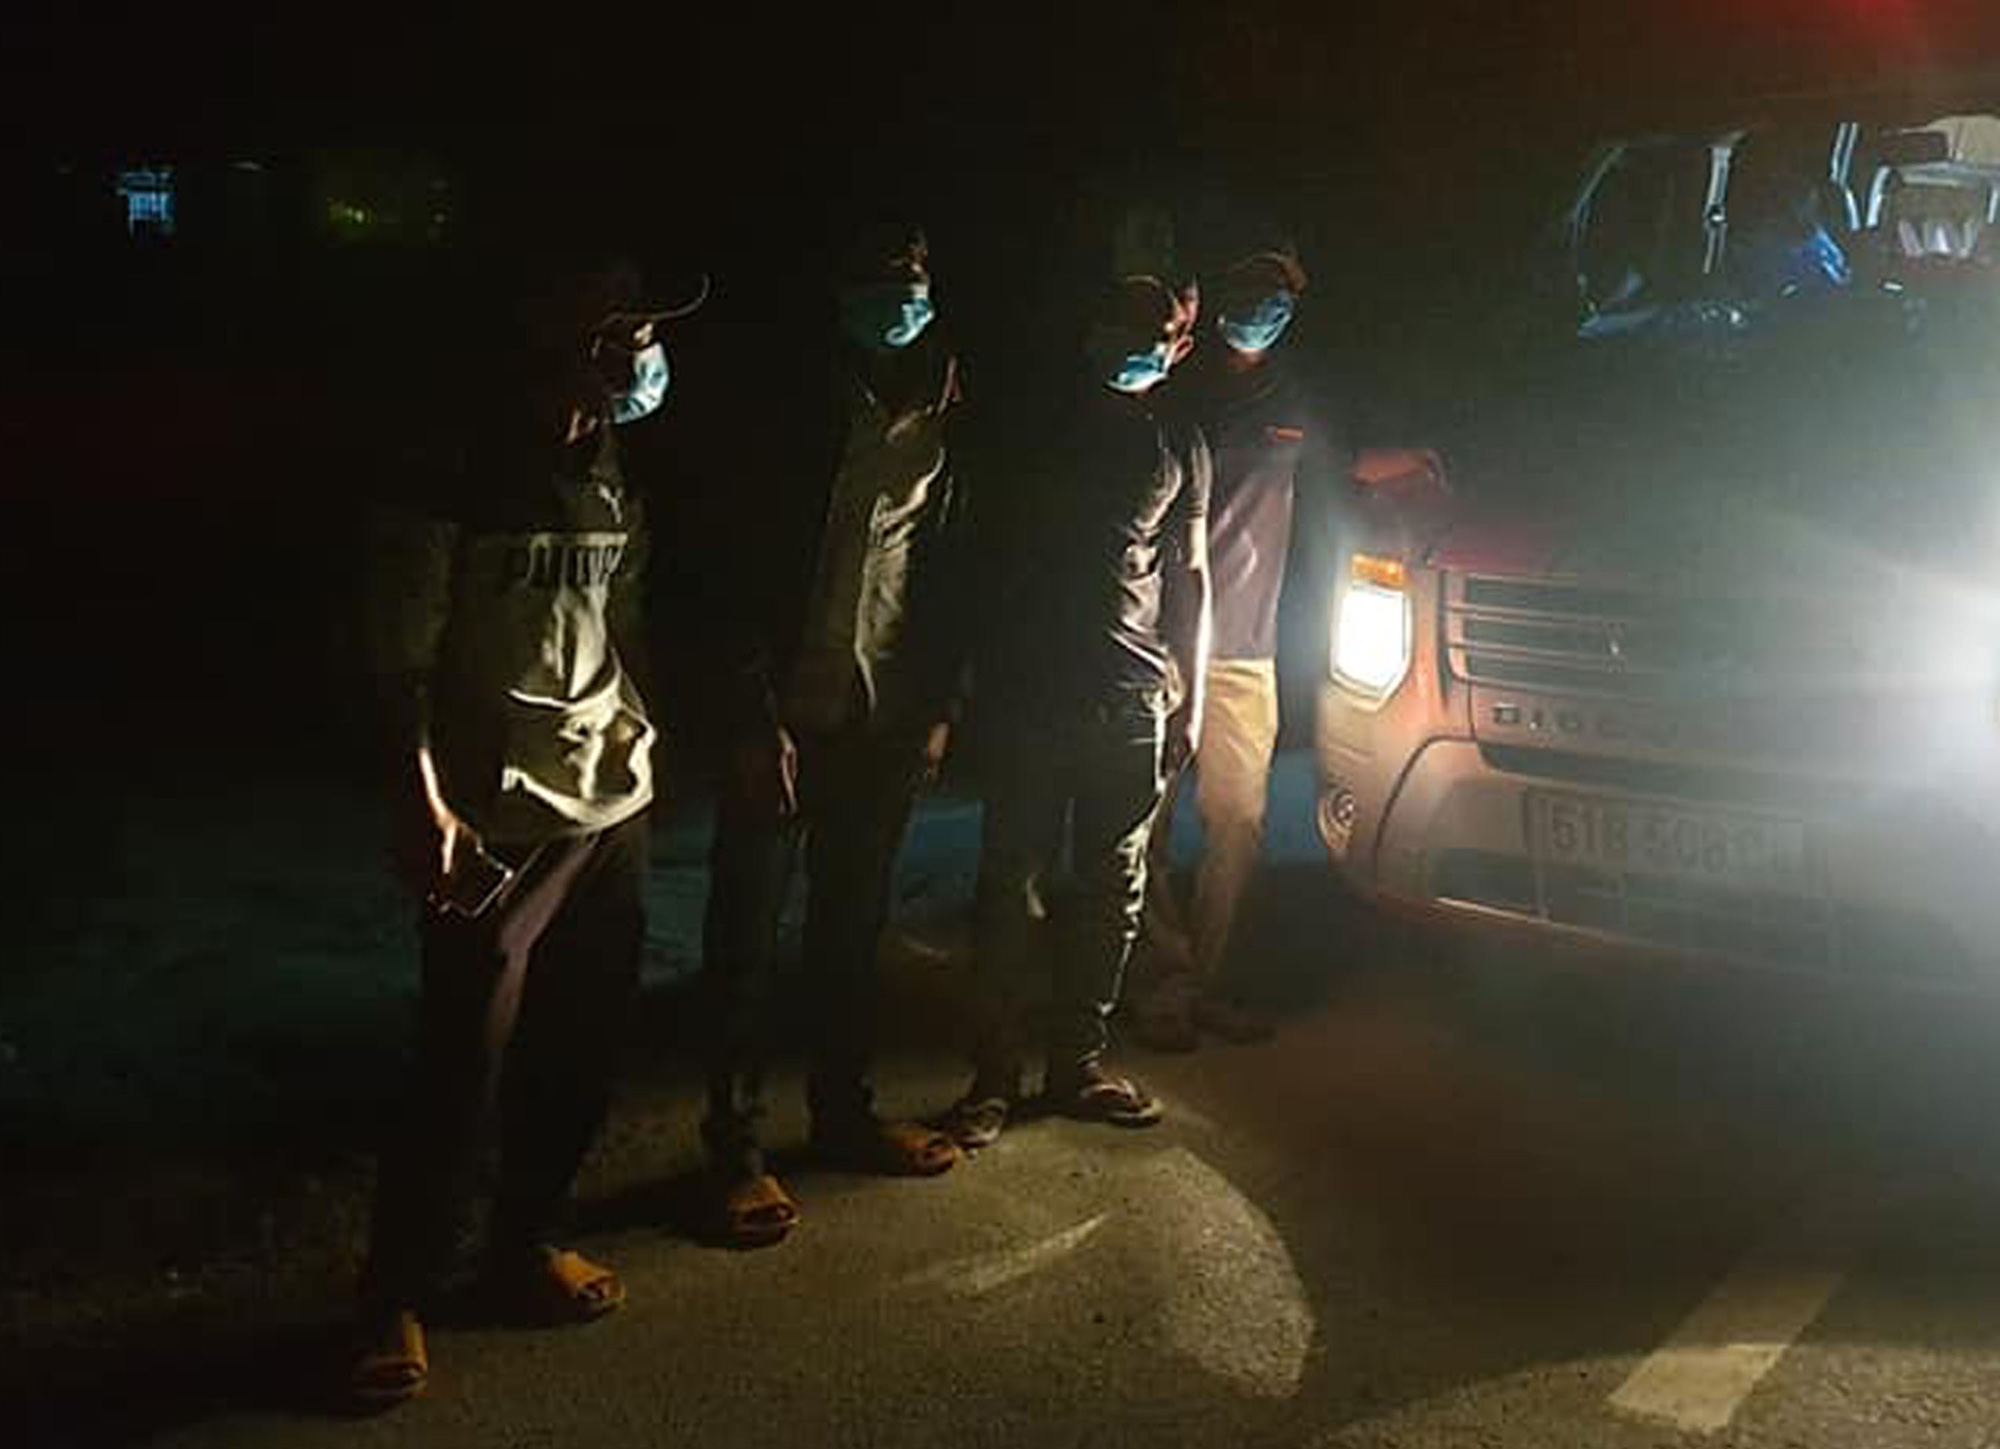 SOS hỗ trợ 4 ngư dân đi bộ từ Ninh Thuận về Phú Yên trong đêm - Ảnh 2.